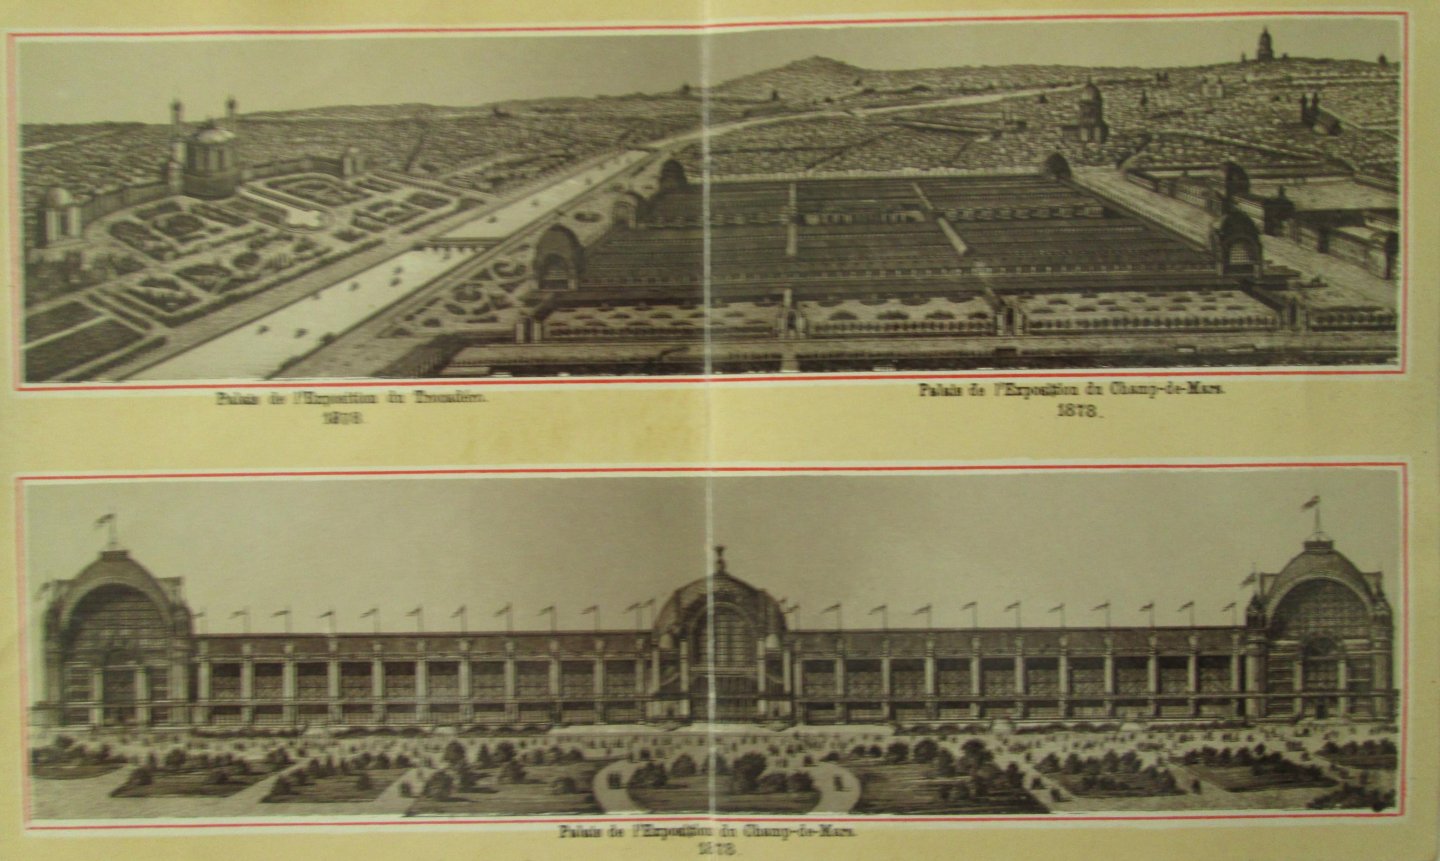  - Album de Paris et de l'Exposition Universelle Internationale 1878, Paris, met afb. van Parijs en van tentoonstellingpaleizen